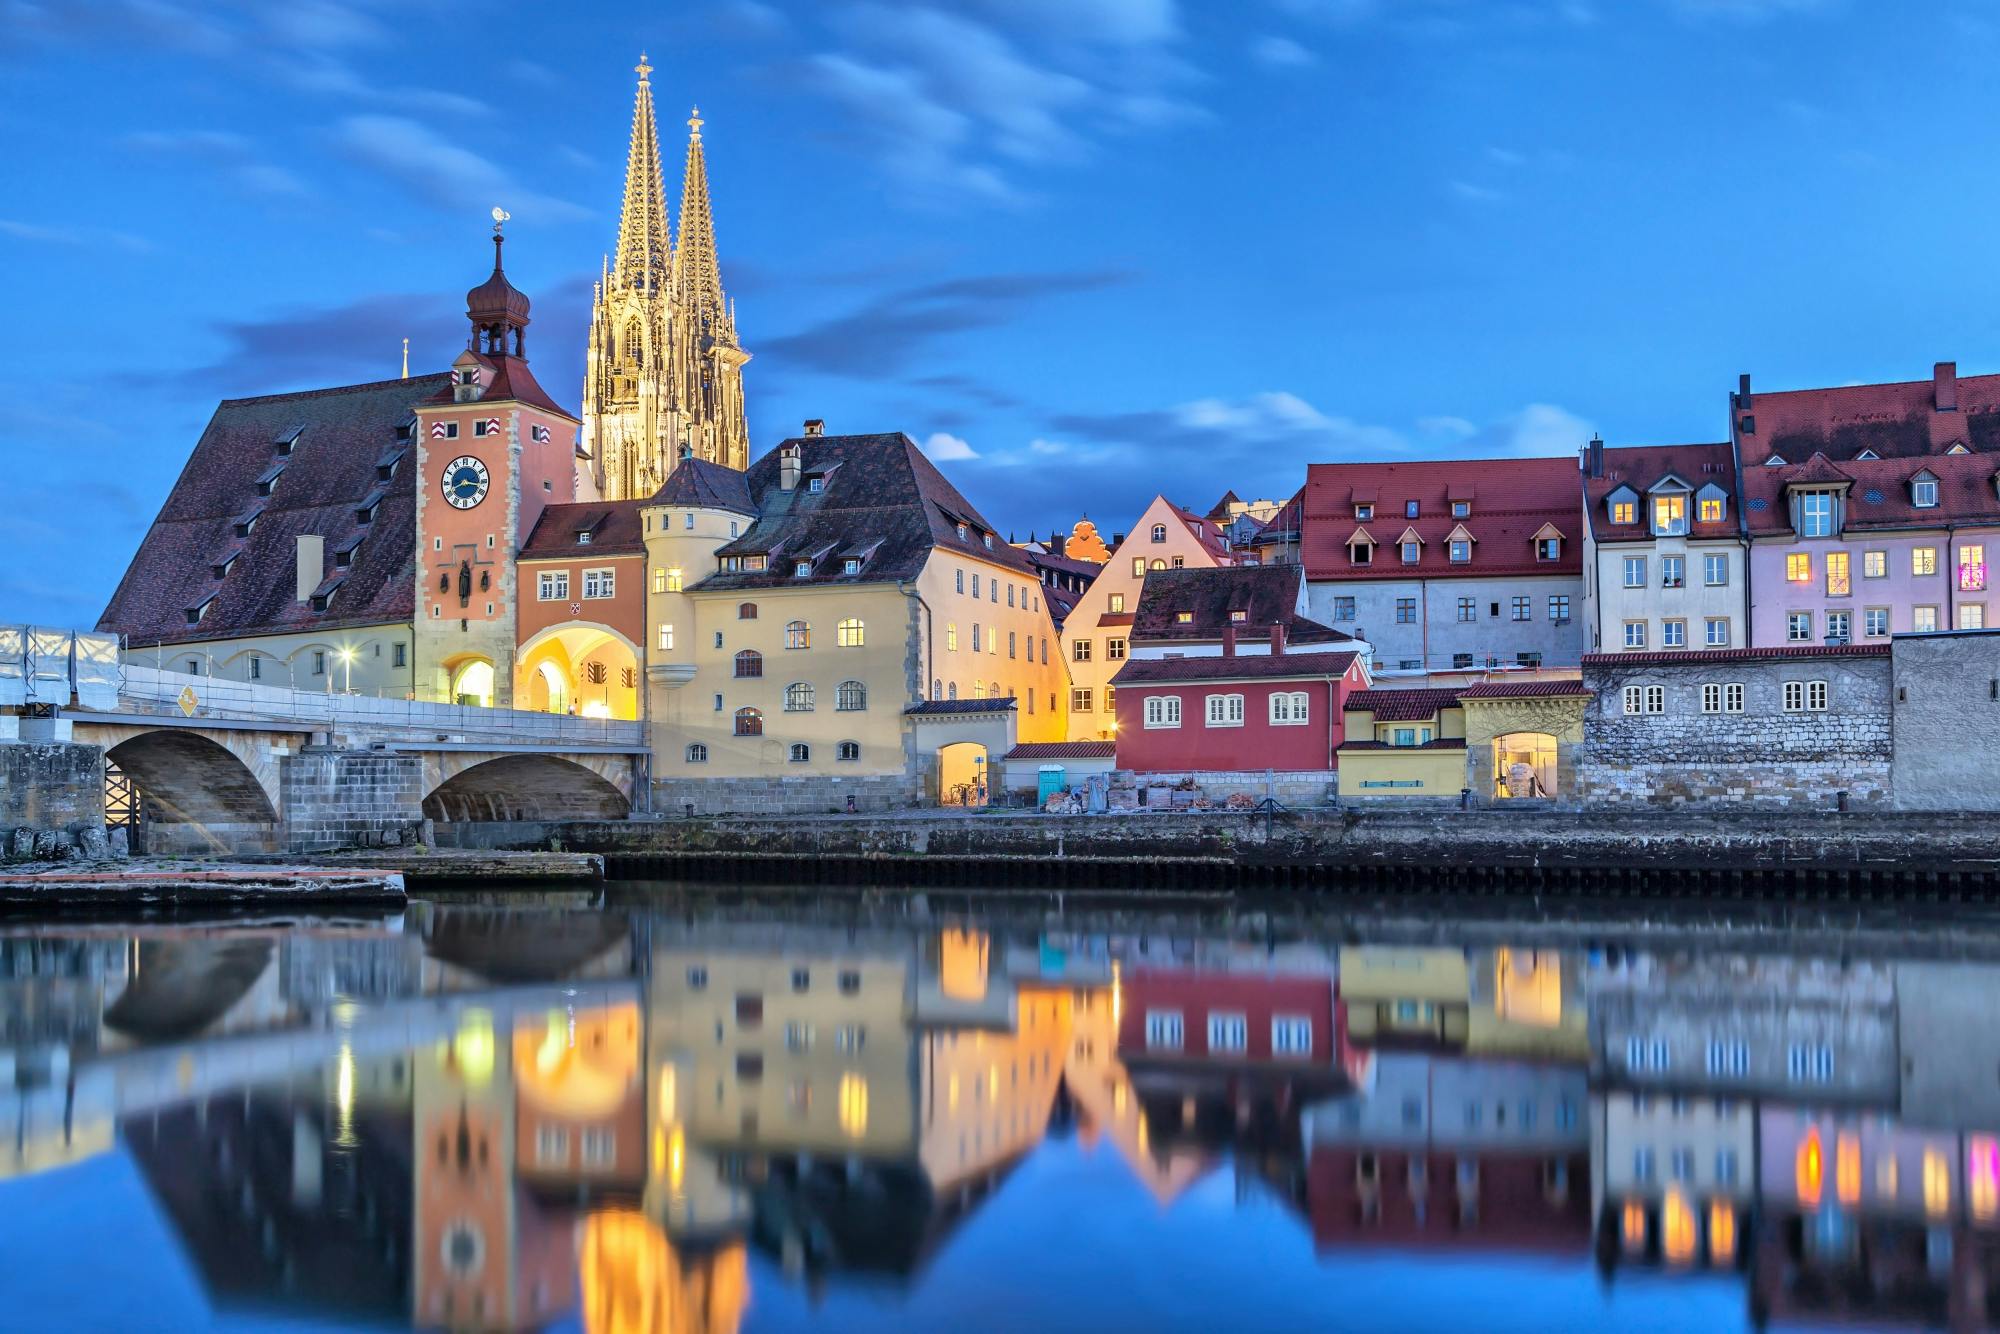 Descubra Regensburg em 1 hora com um morador local